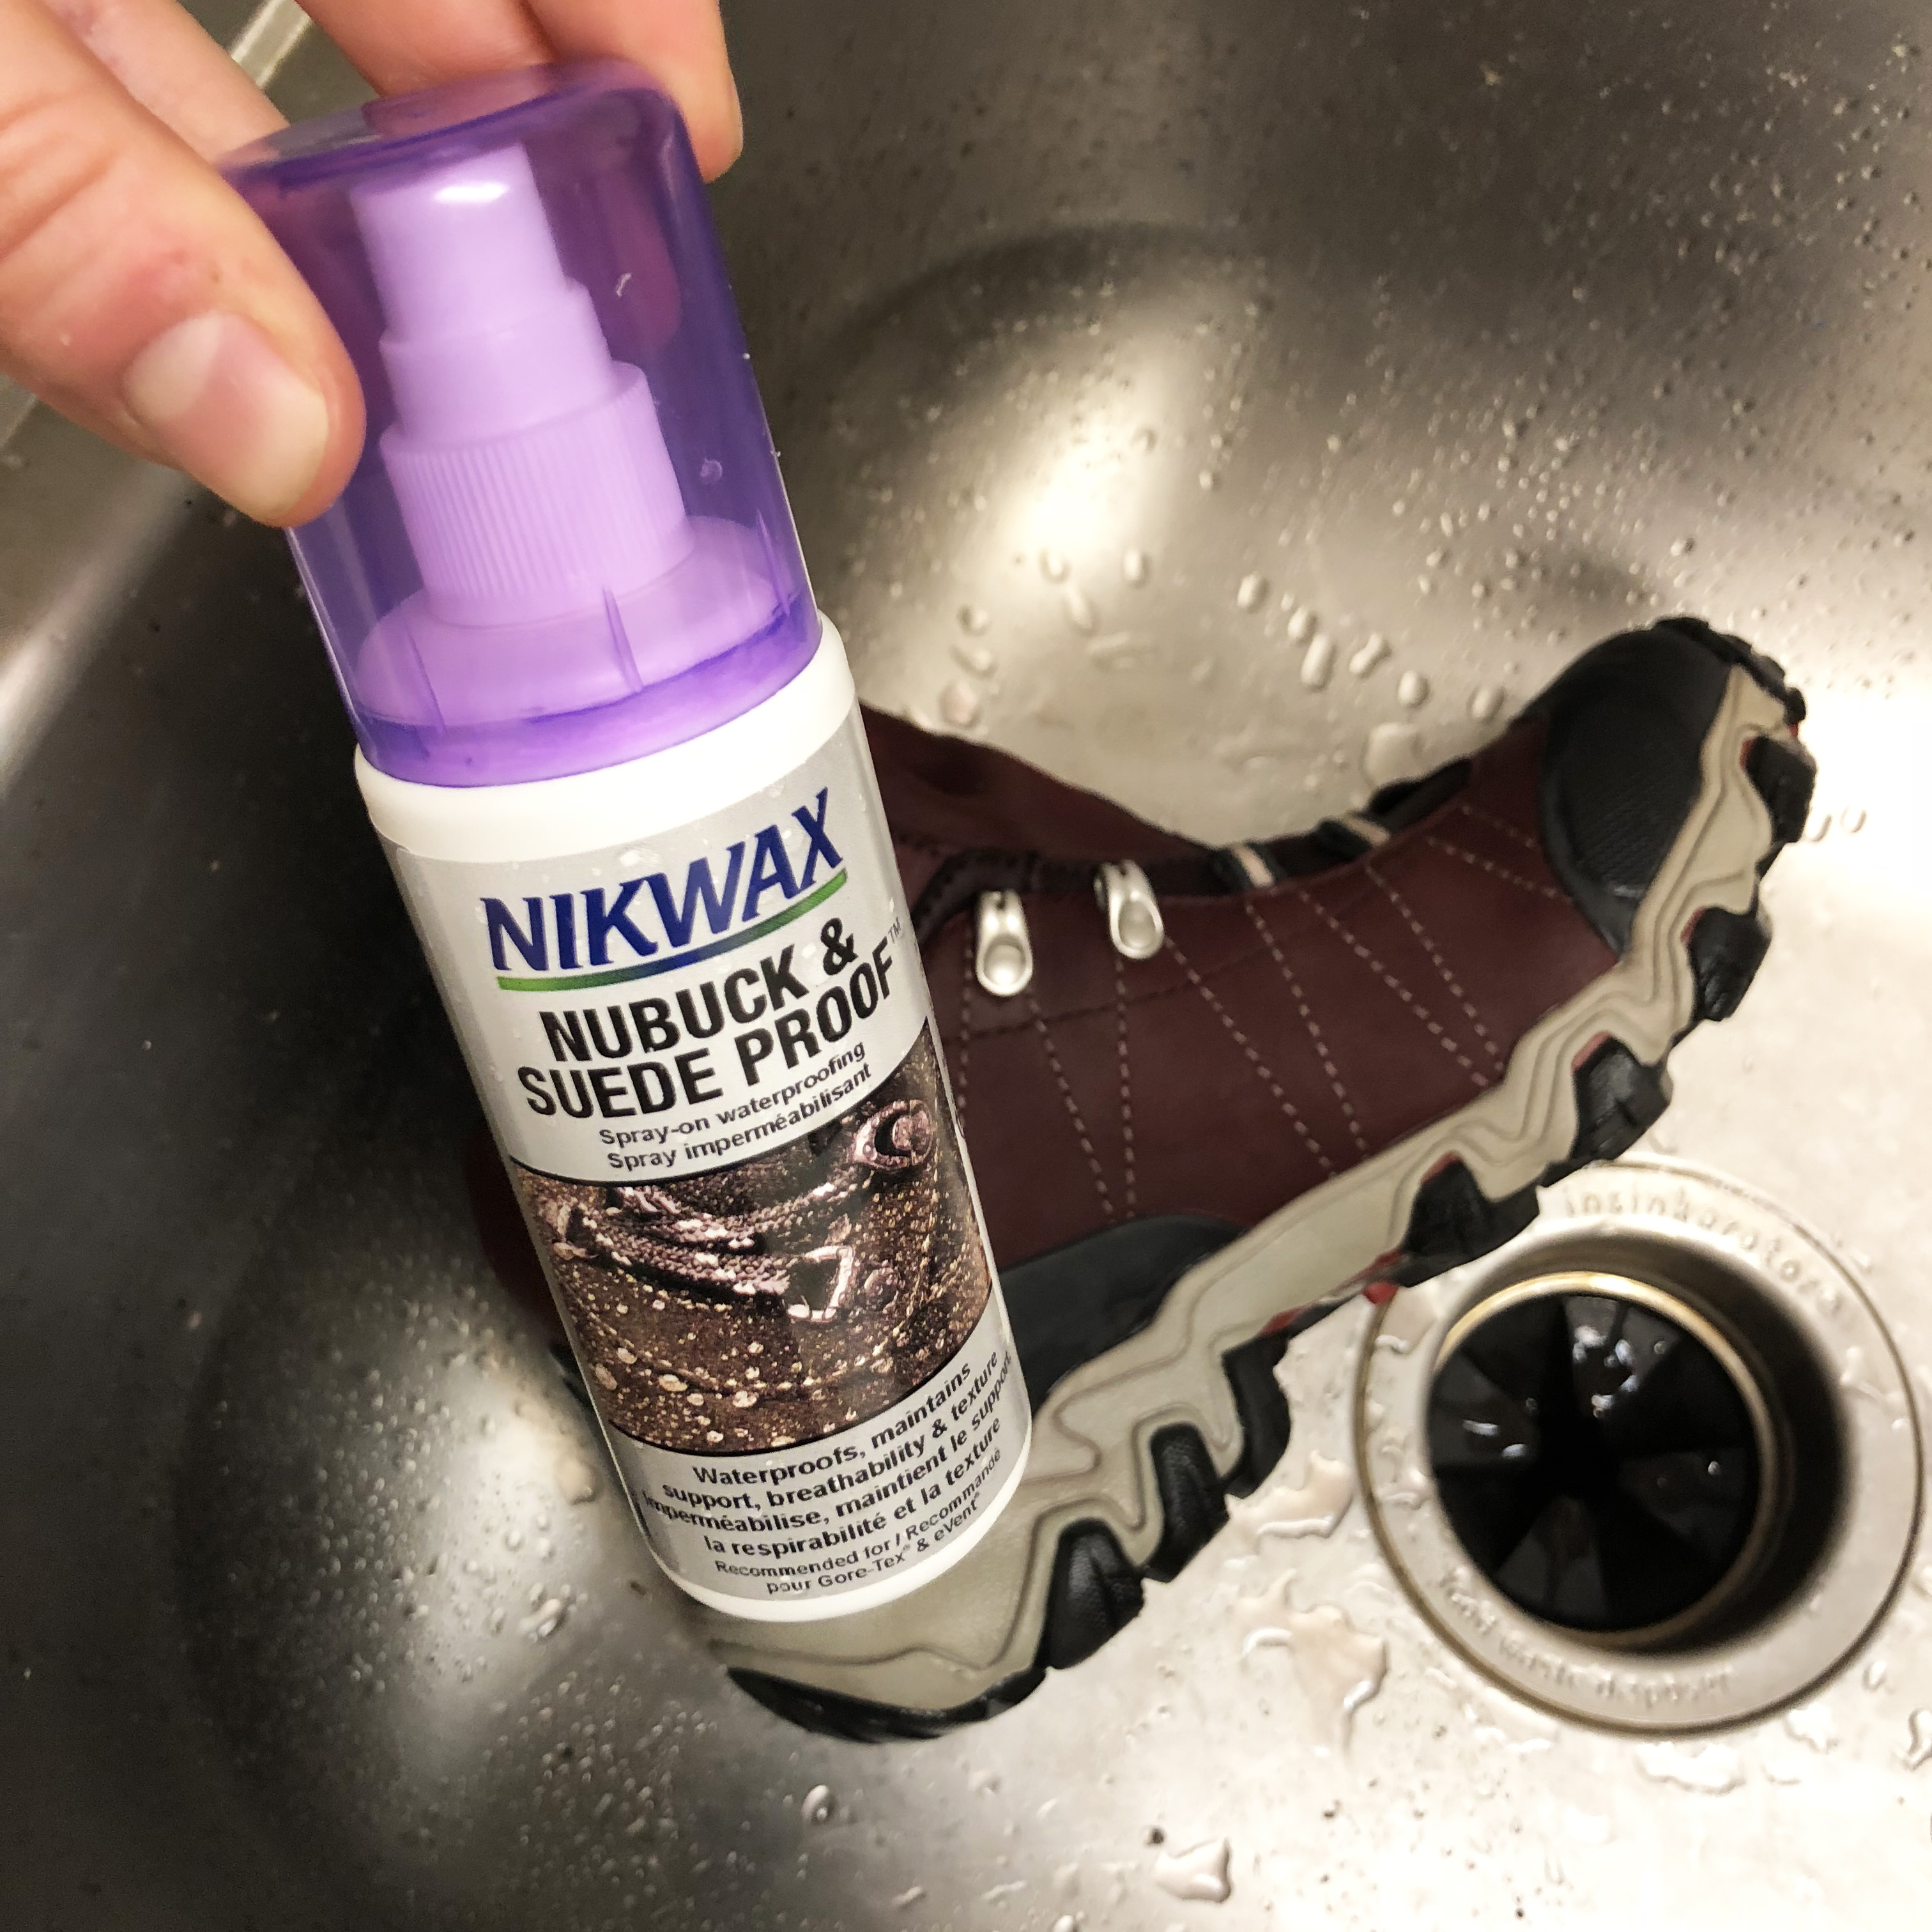 nikwax nubuck & suede proof waterproofing